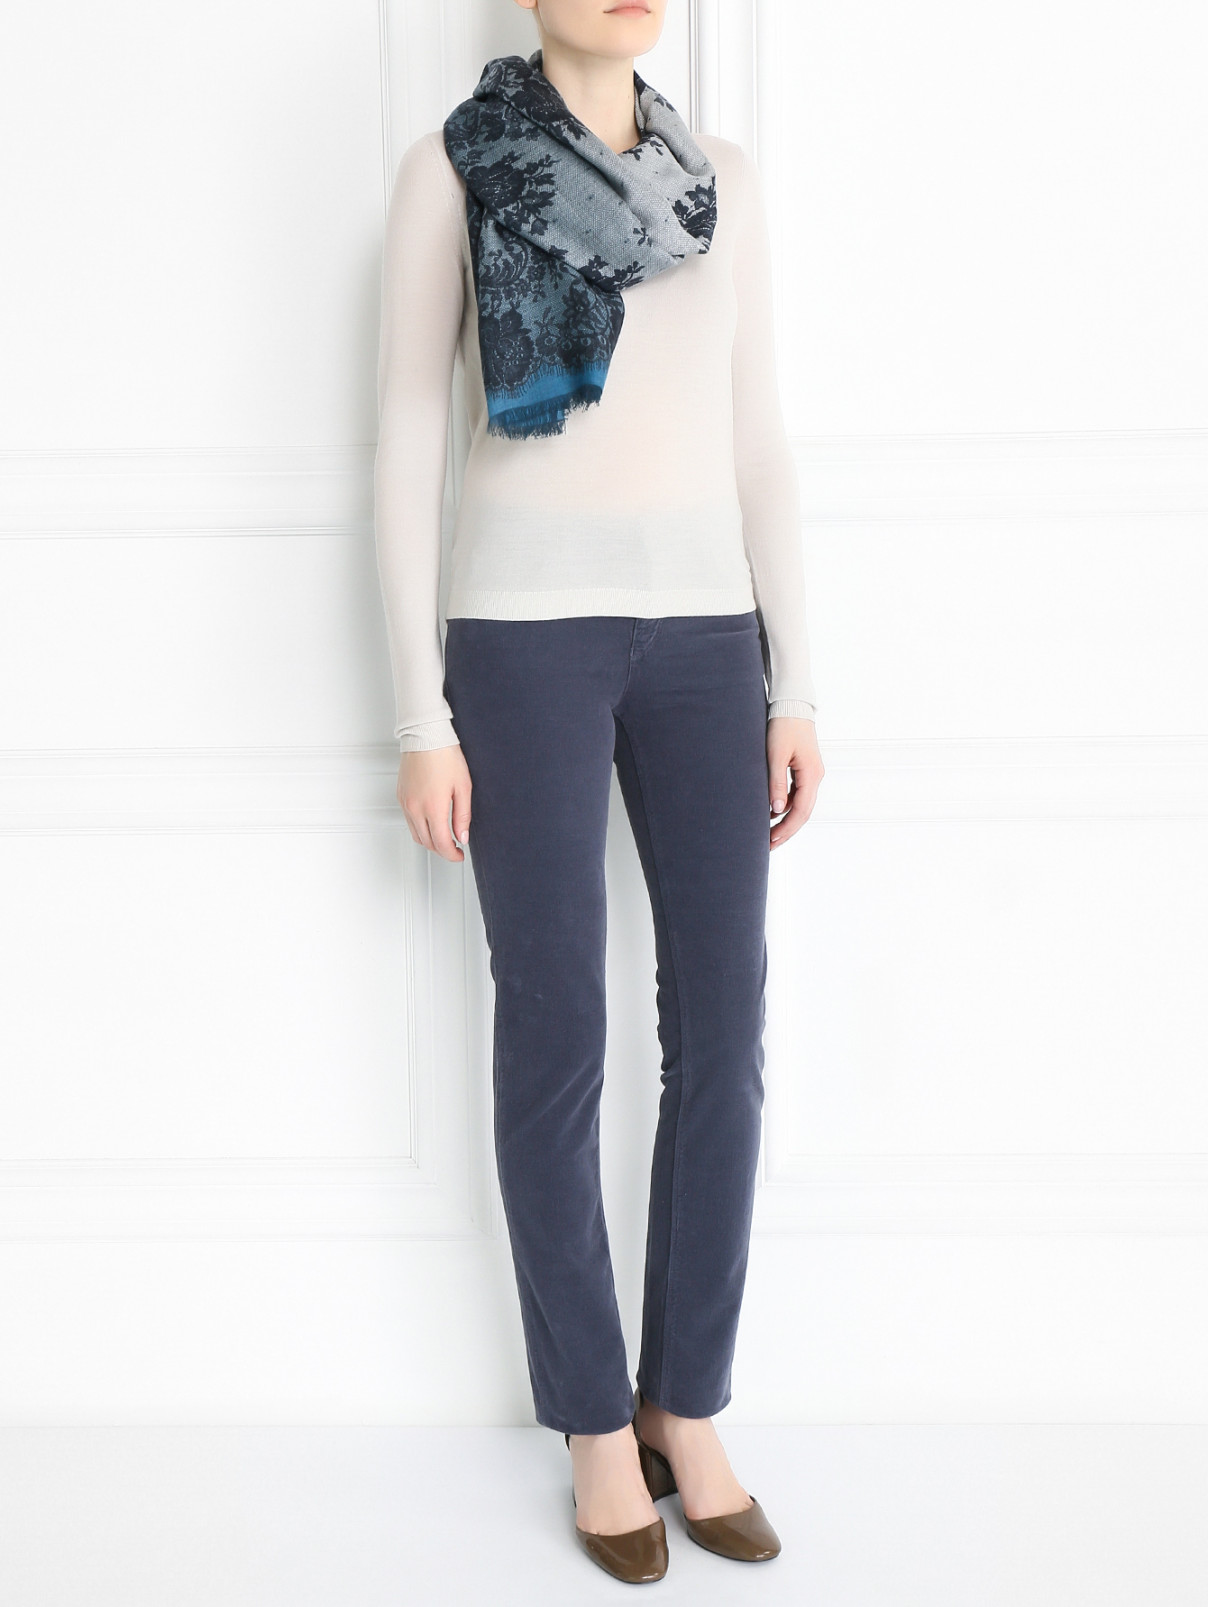 Брюки из хлопка прямого кроя с карманами Armani Jeans  –  Модель Общий вид  – Цвет:  Серый